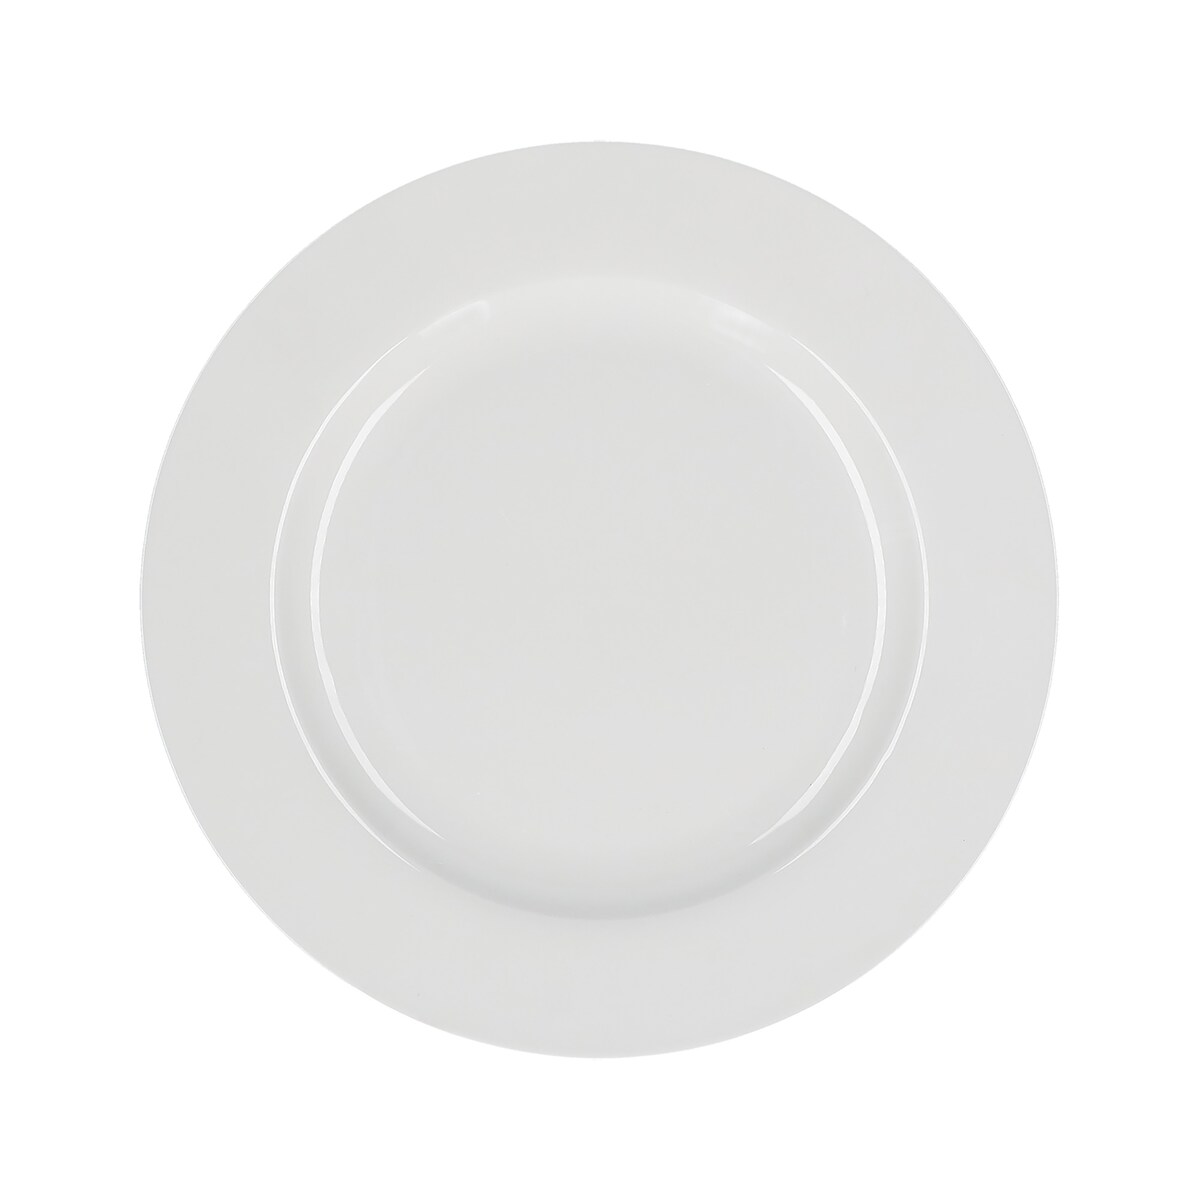 Zestaw 6 talerzy obiadowych z rantem Essenziale - Biały, 27 cm